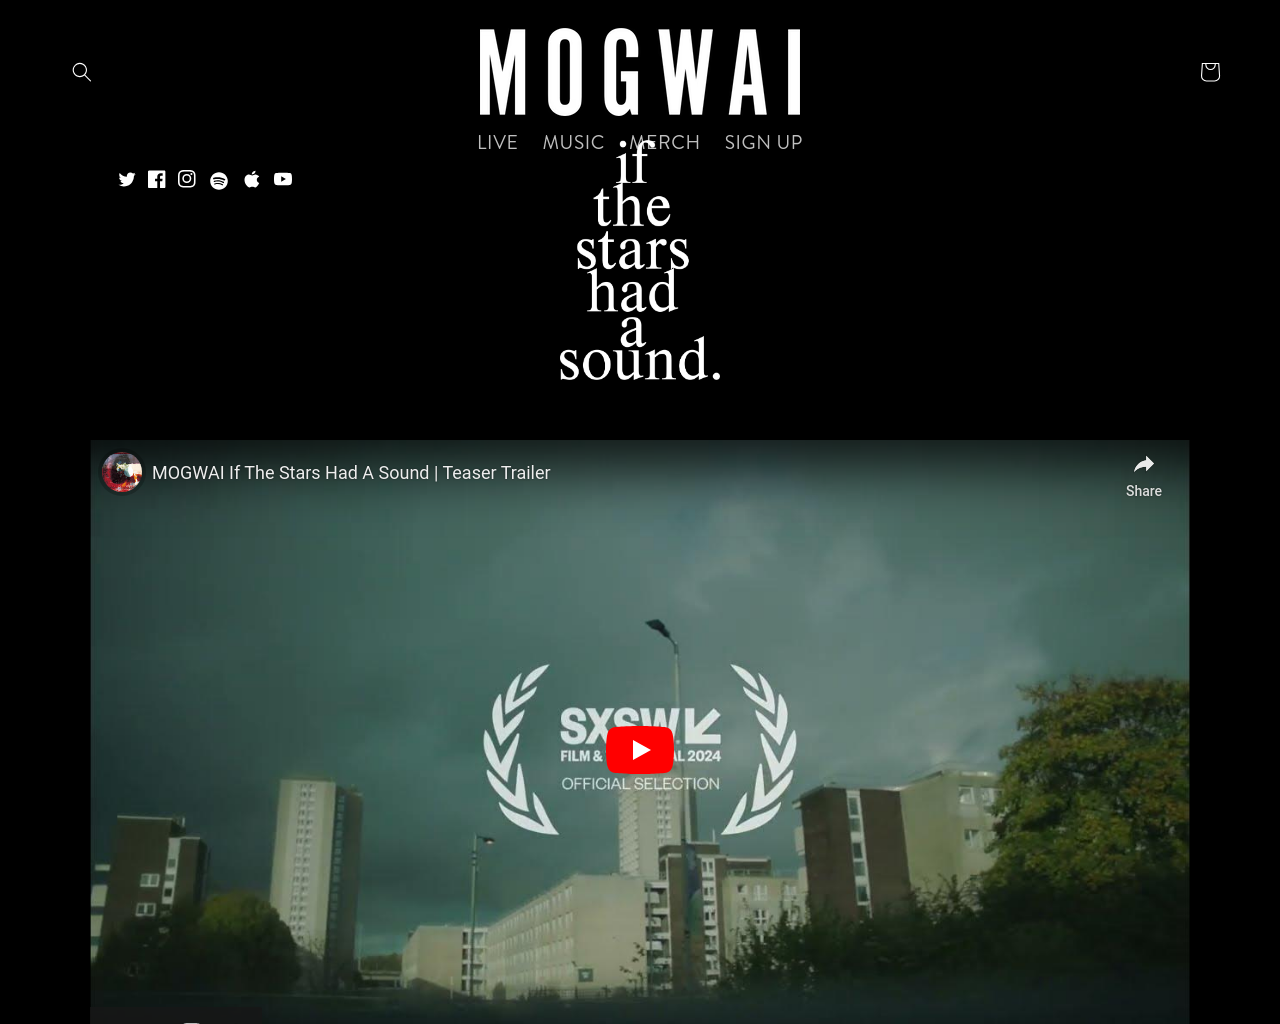 mogwai.co.uk